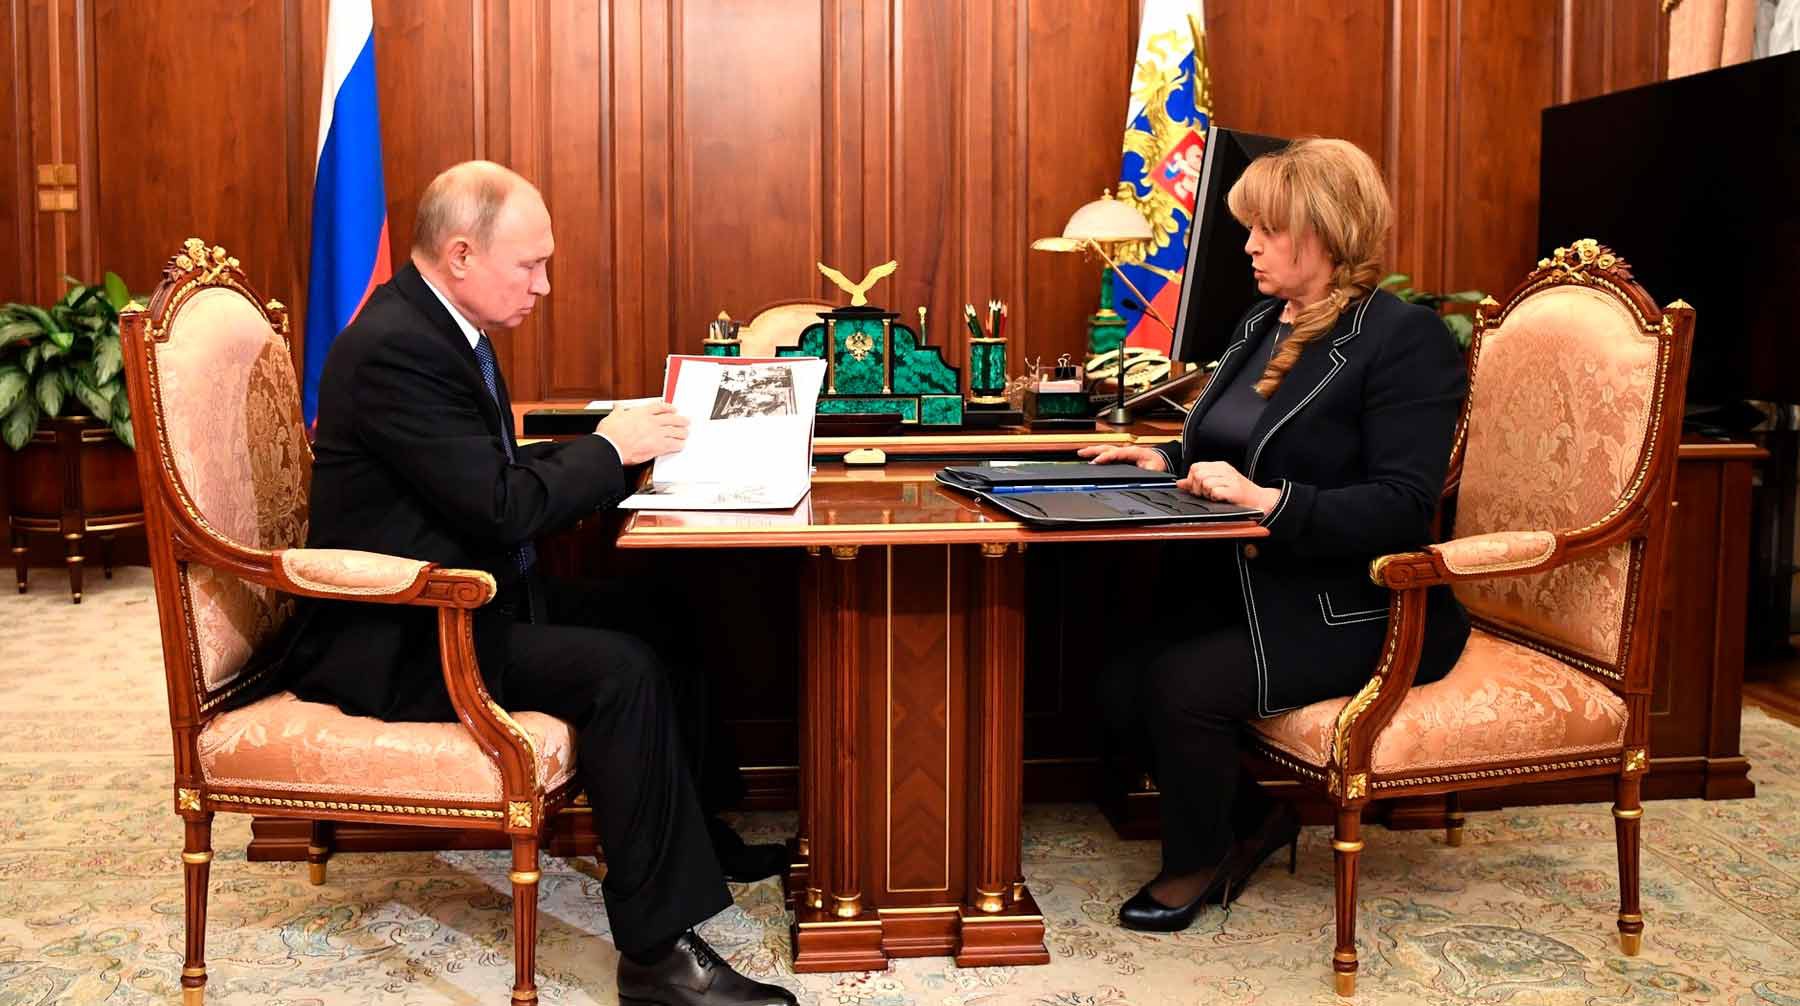 Dailystorm - Памфилова предложила Путину «развести» выборы и учебный процесс